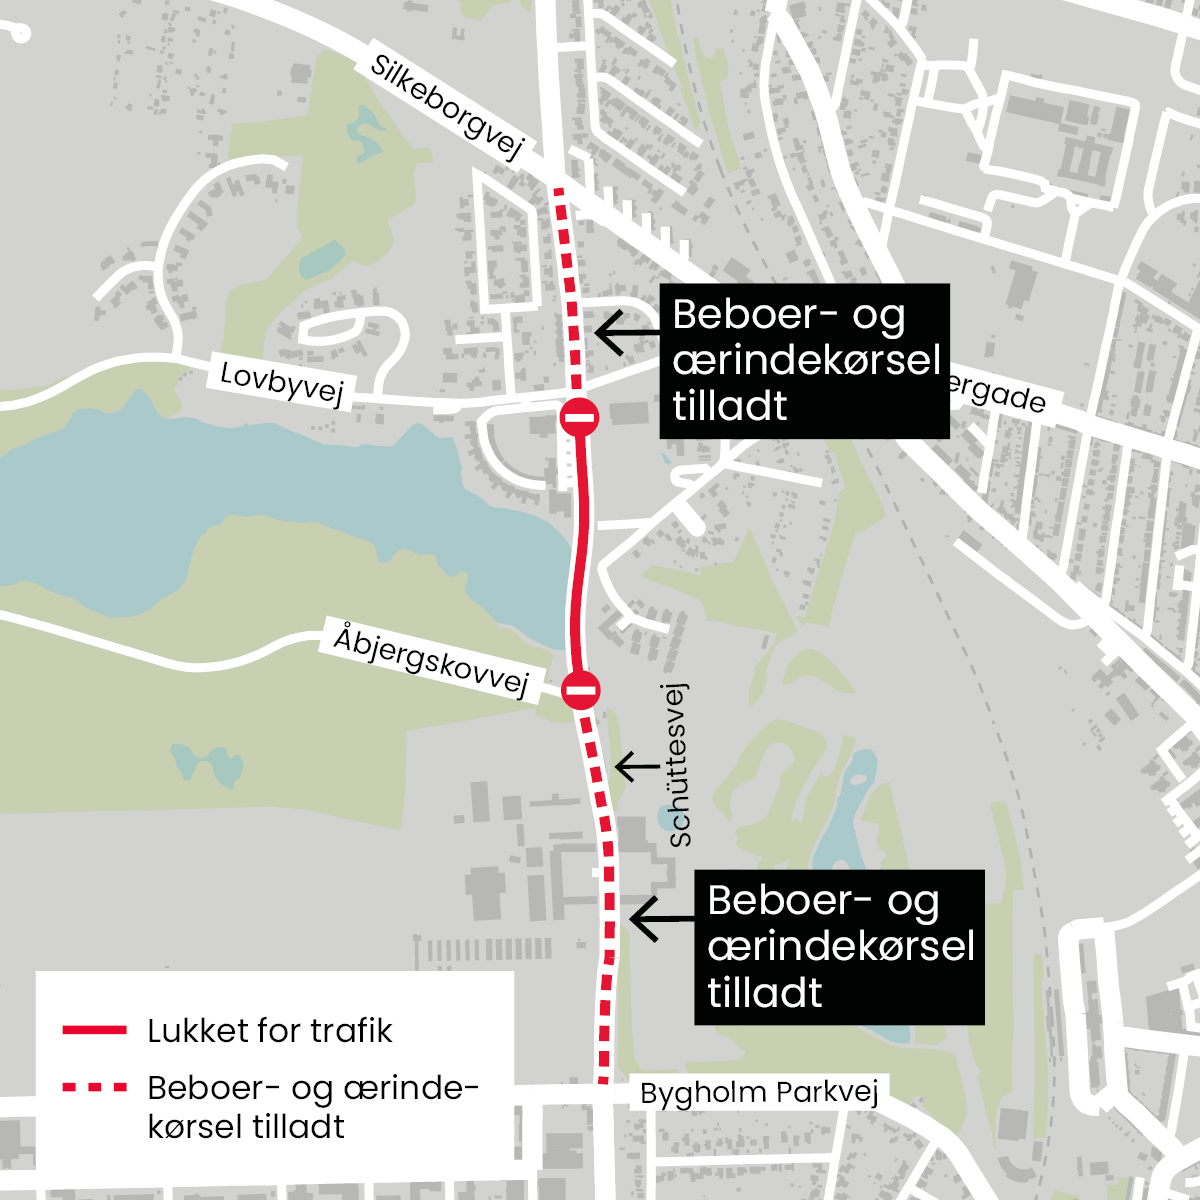 tøjlerne controller Wedge Schüttesvej spærres for trafik fra fredag morgen og fire dage frem |  Horsens Kommune